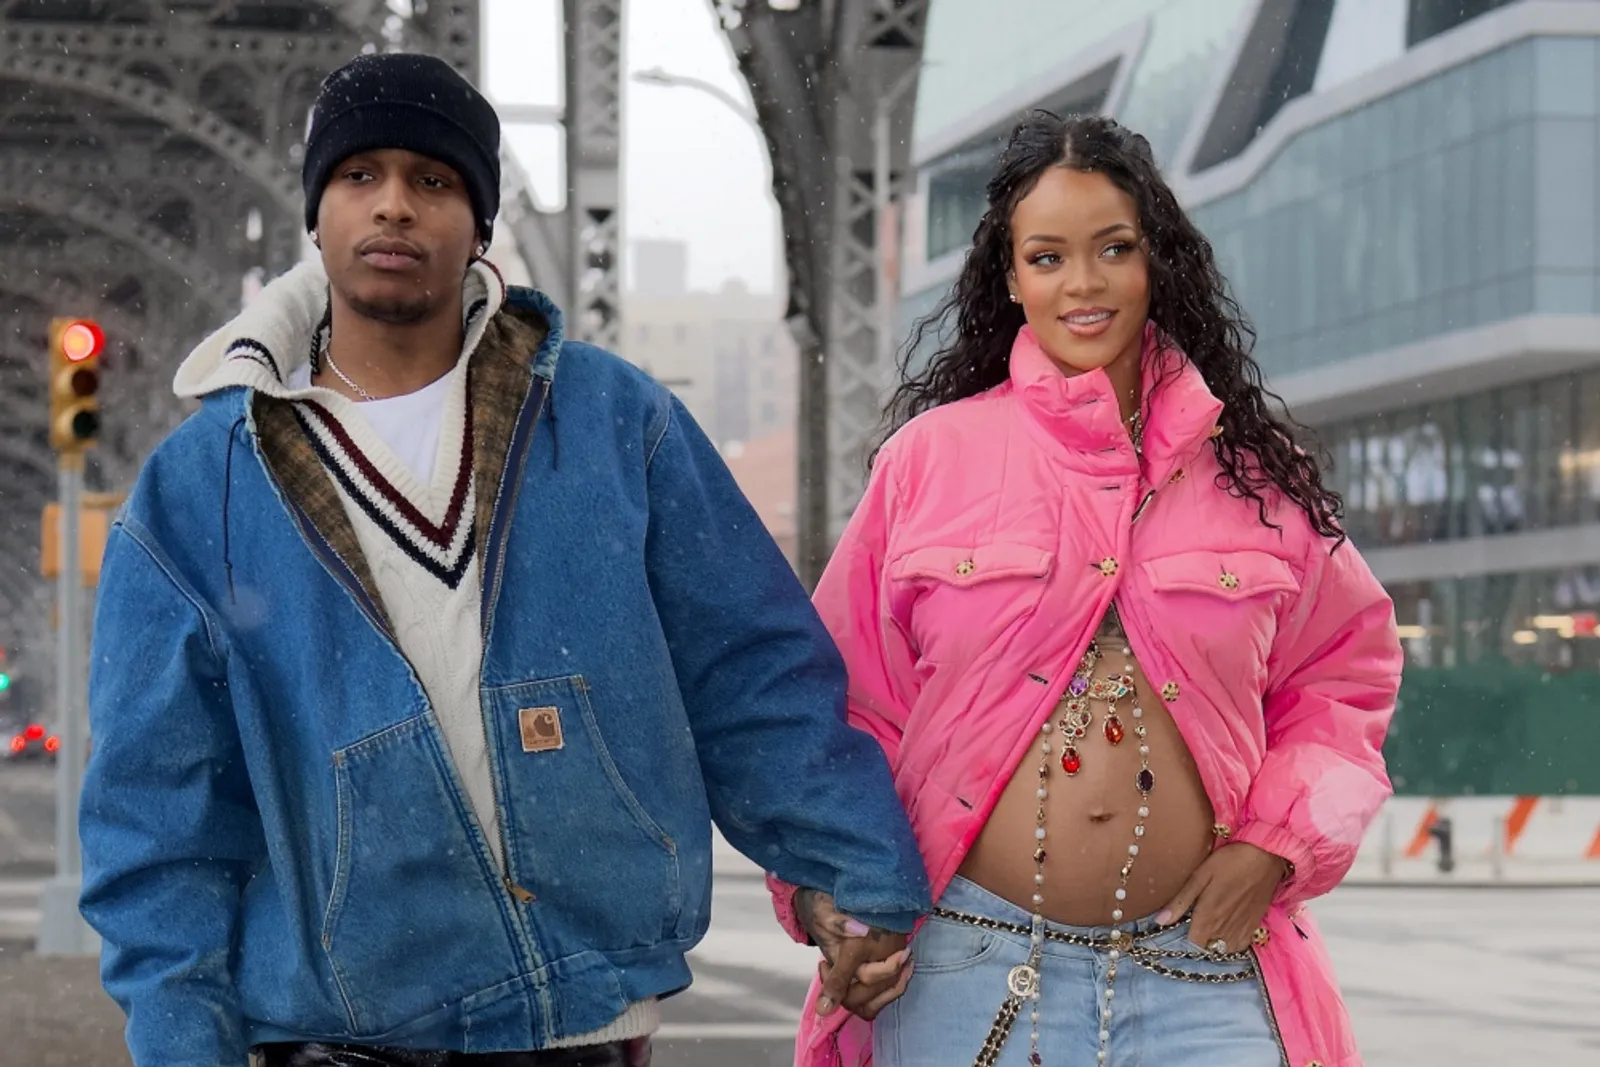 Rihanna Melahirkan Didampingi A$AP Rocky, Ini 5 Faktanya